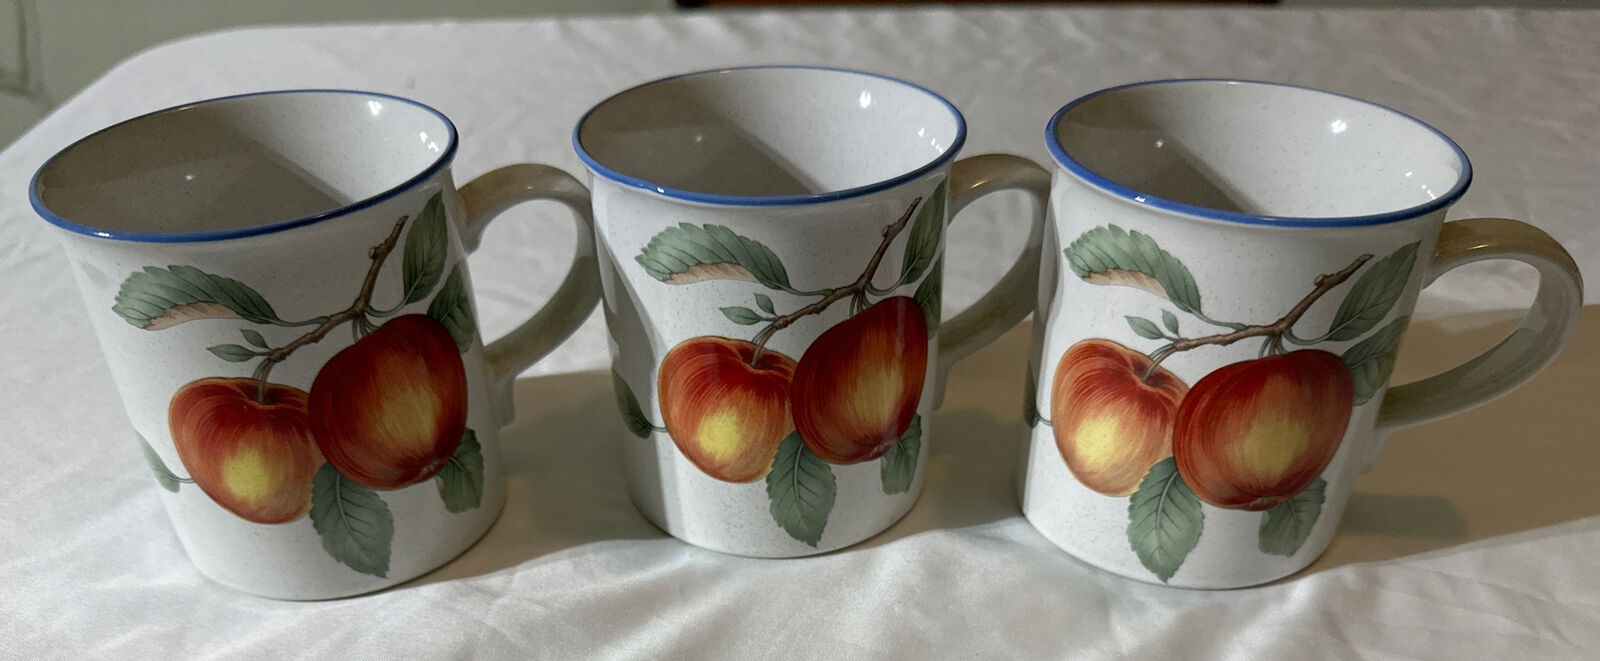 Set of 3  Mugs by Savoir Vivre, Made in Japan - Luscious JJ017